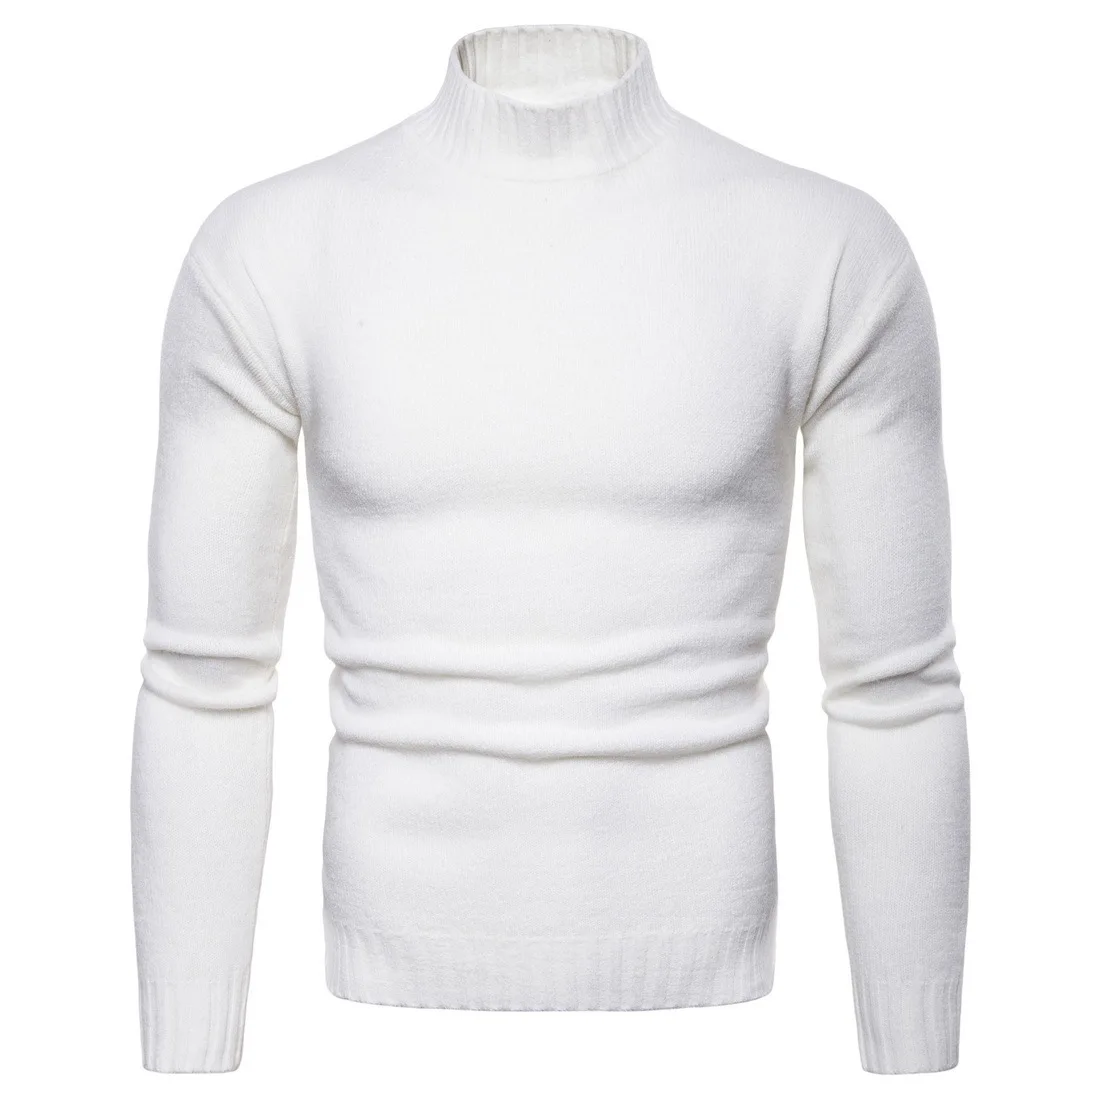 Vomint, брендовые новые мужские пуловеры, свитера с высоким воротом, базовые Повседневные свитера с длинными рукавами, свитера с высоким воротником - Цвет: white